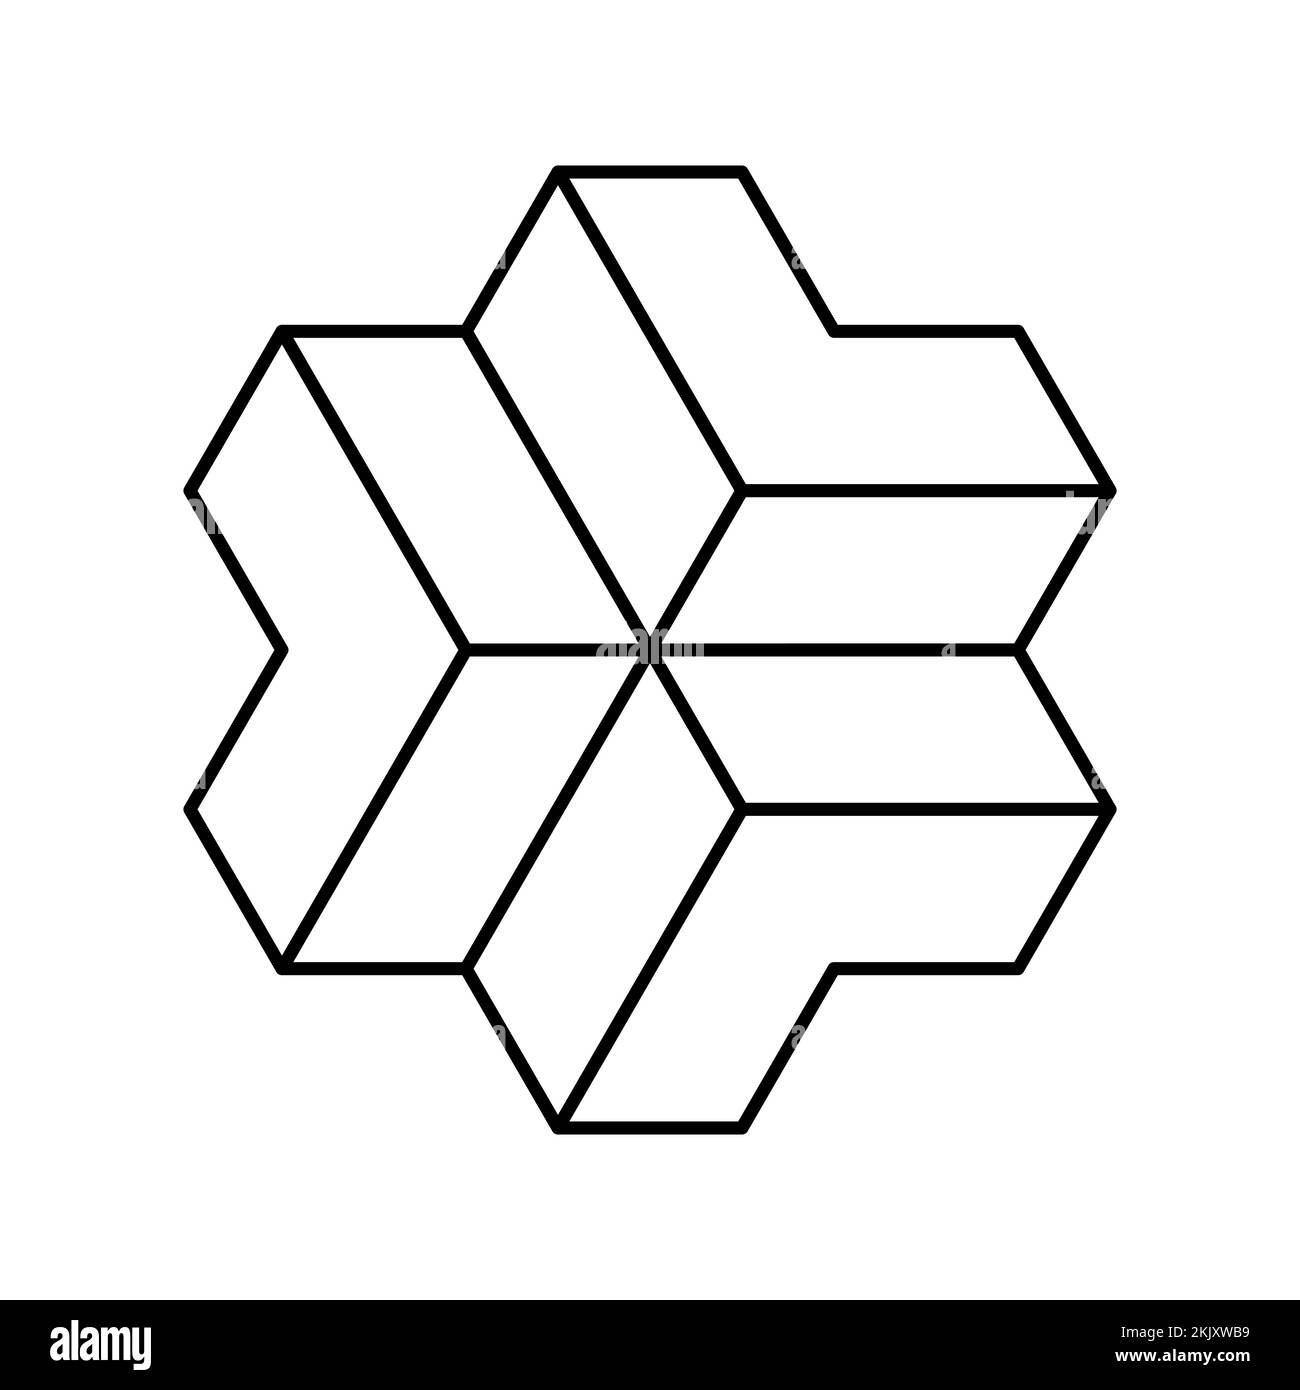 Logo lineare con tre frecce 3D. Modello di logotipo geometrico LLL. Le punte delle frecce si incontrano nel mezzo. Direzione centrale. Elementi di forma poligonale. Illustrazione Vettoriale